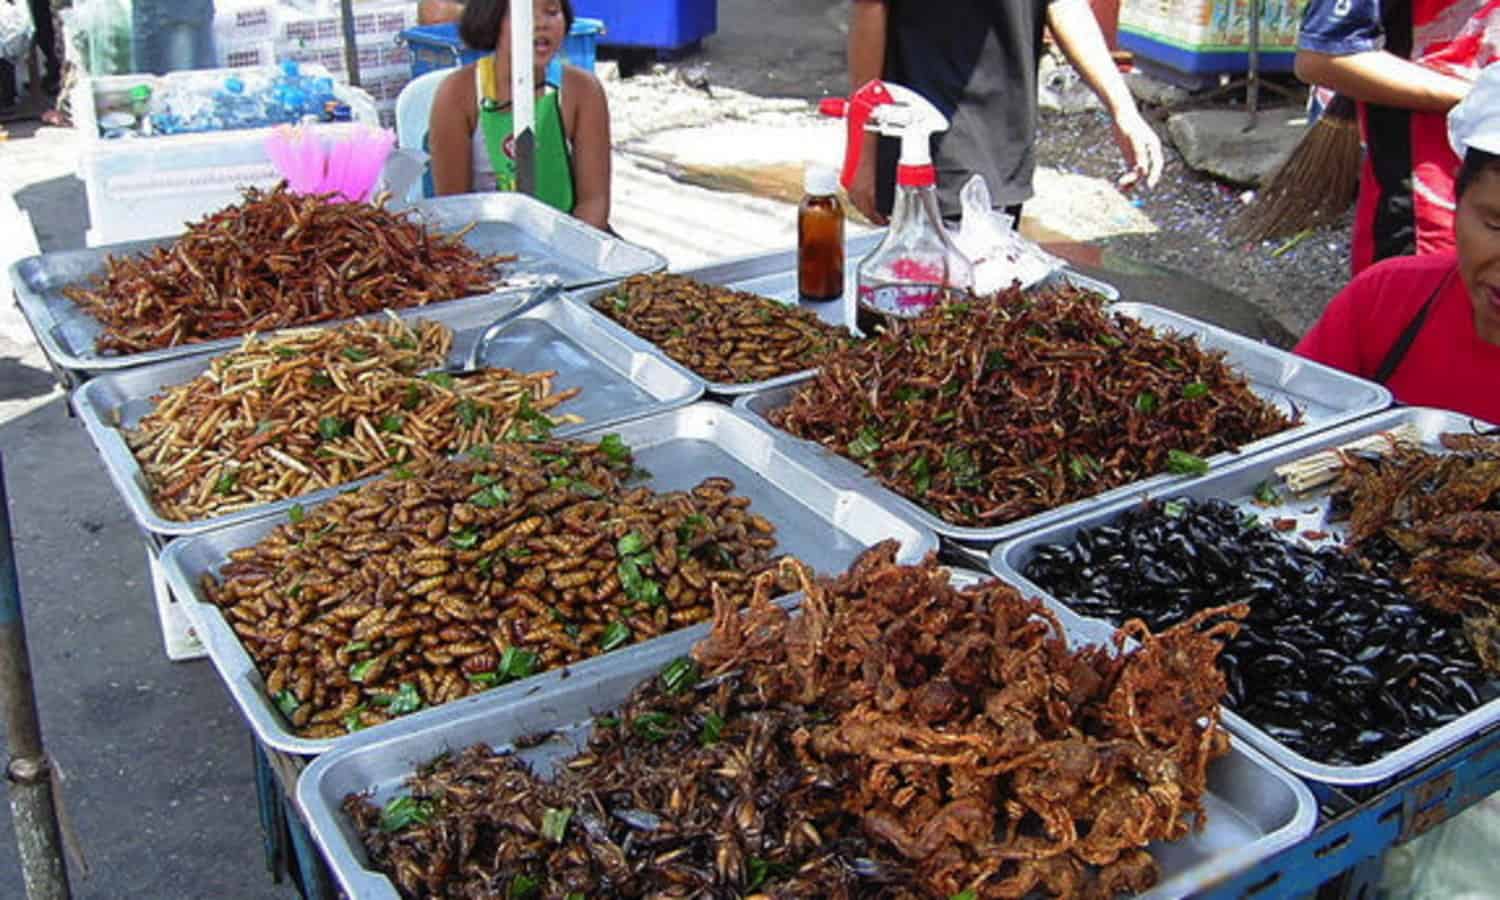 食用昆虫一直是人类饮食的一部分,通常消费作为食物来源在世界的许多地区。据估计,目前有二十亿人食用昆虫作为饮食的一部分。